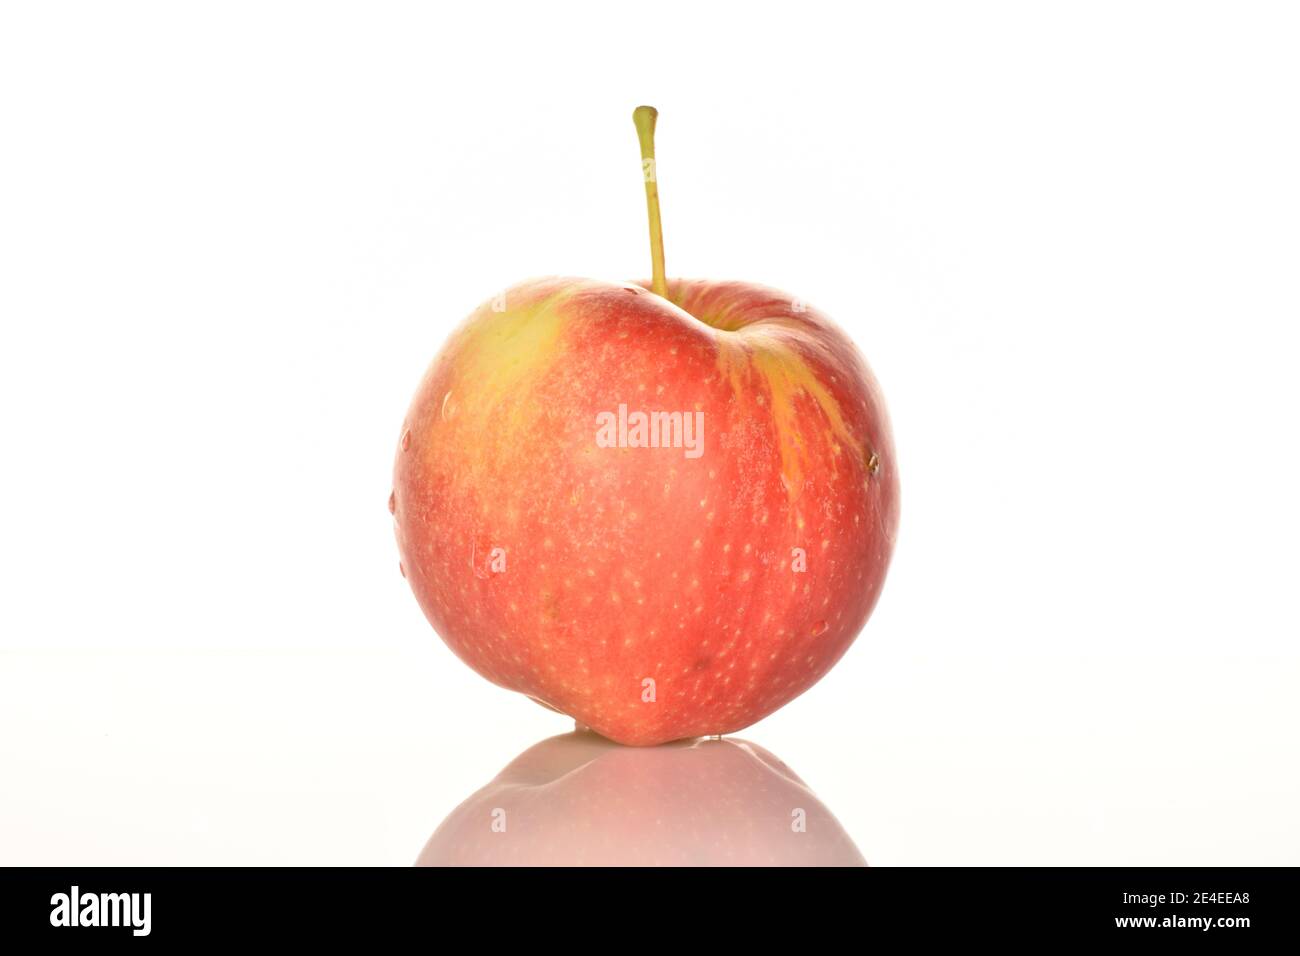 https://c8.alamy.com/comp/2E4EEA8/one-whole-red-ripe-juicy-apple-on-a-white-background-2E4EEA8.jpg